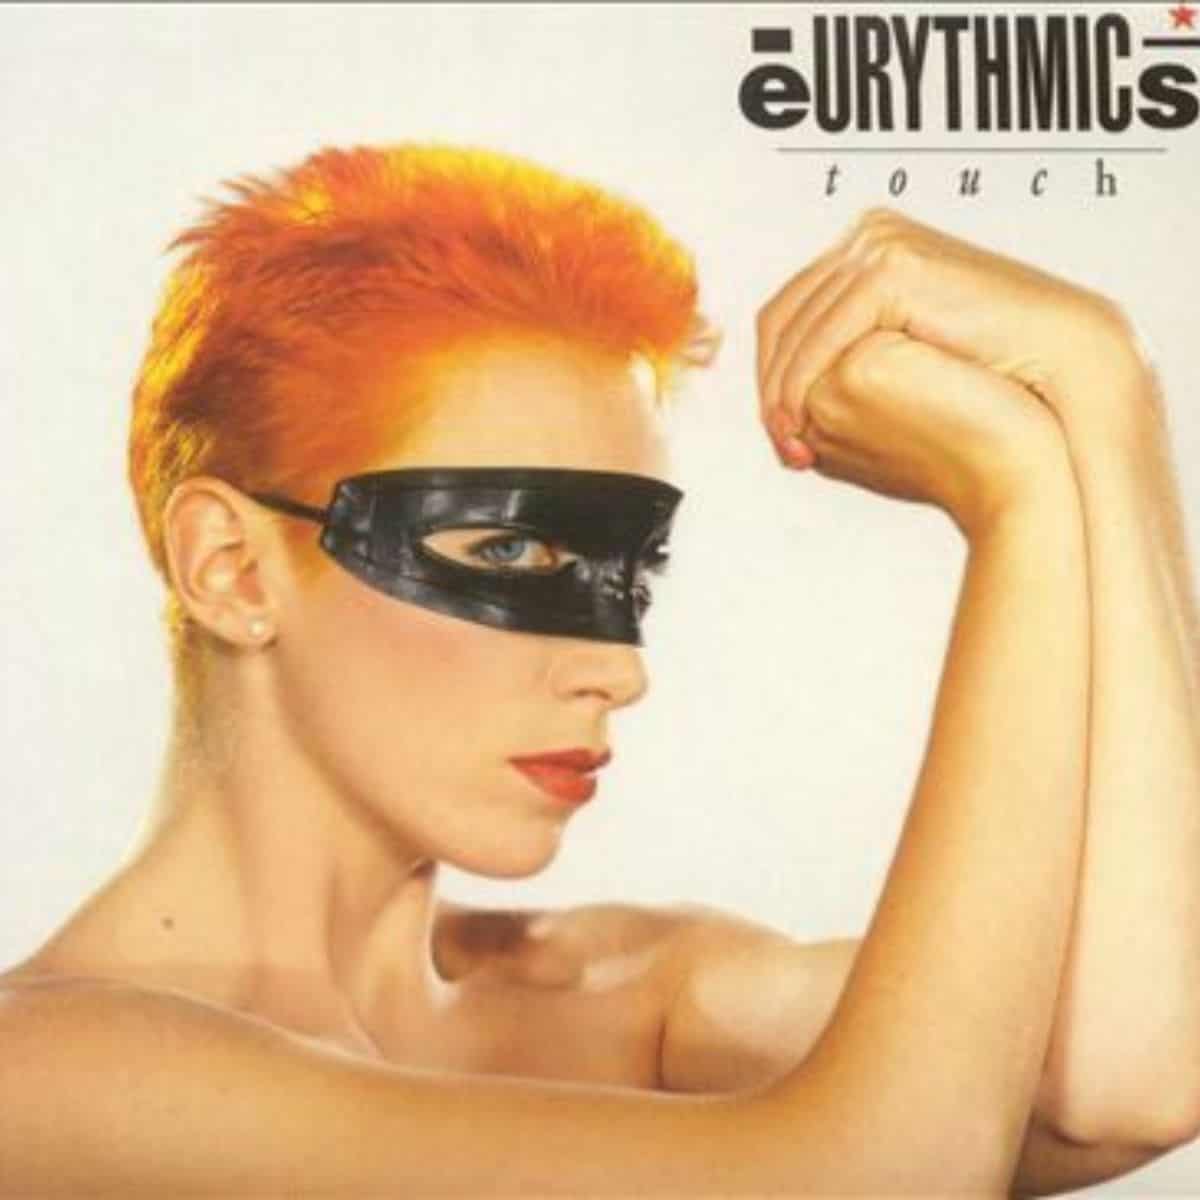 eurythmics album cover